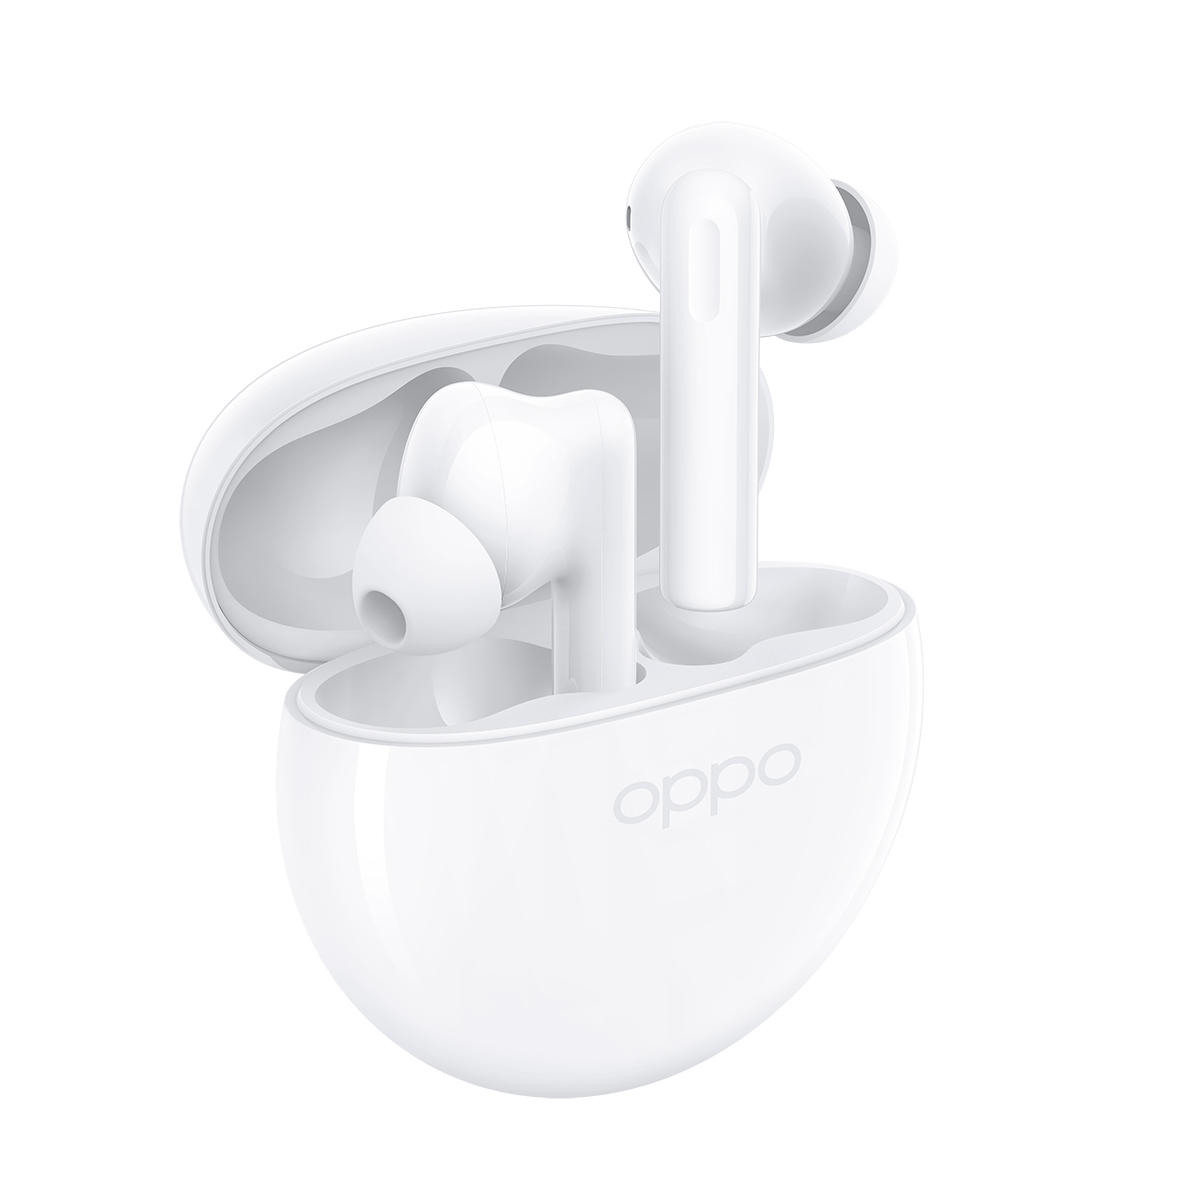 Oppo’nun Enco Buds2 kablosuz kulaklıkları Türkiye’de satışa sunuldu